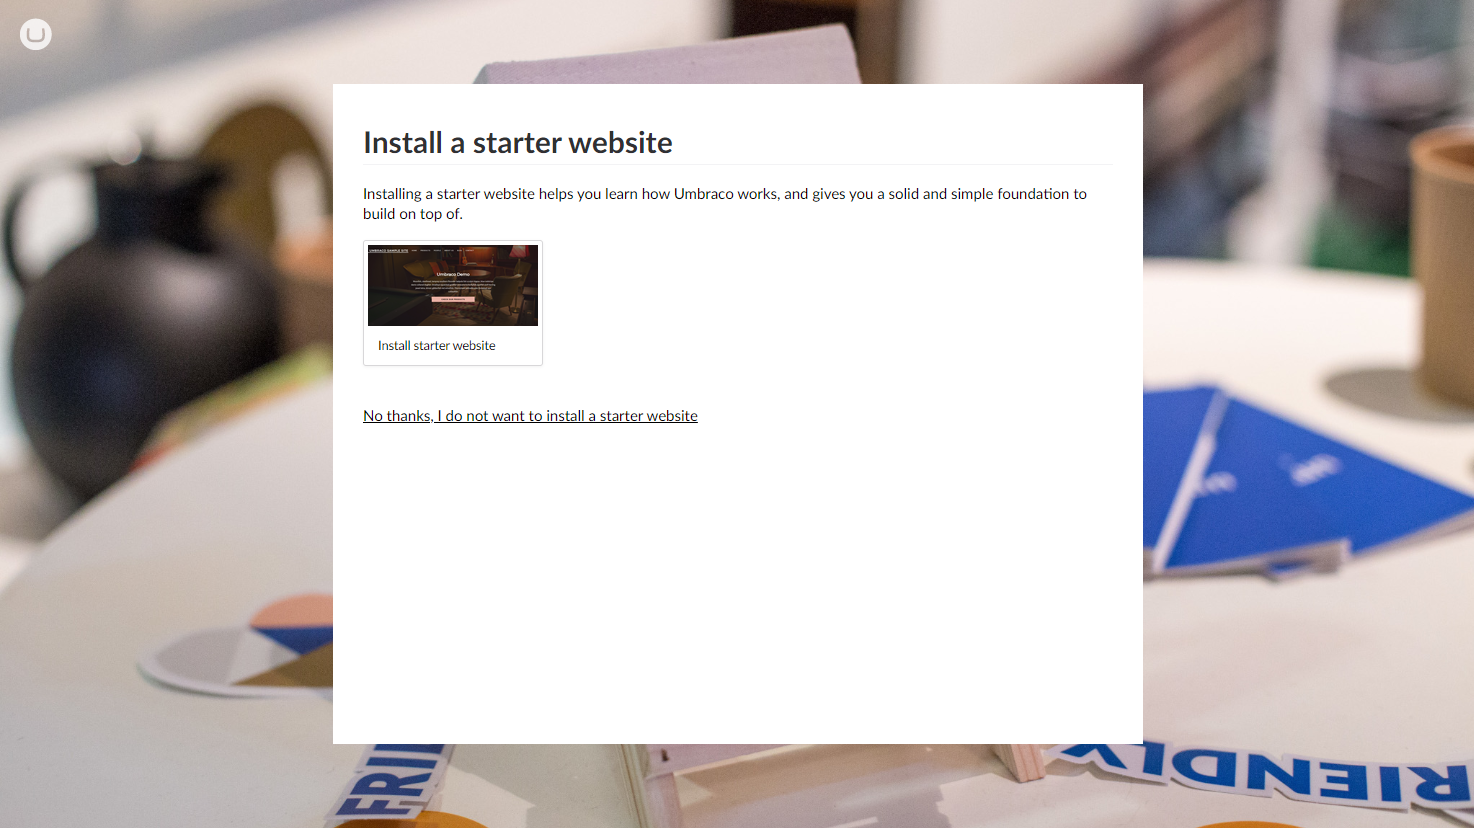 Do not install the default Umbraco starter kit.